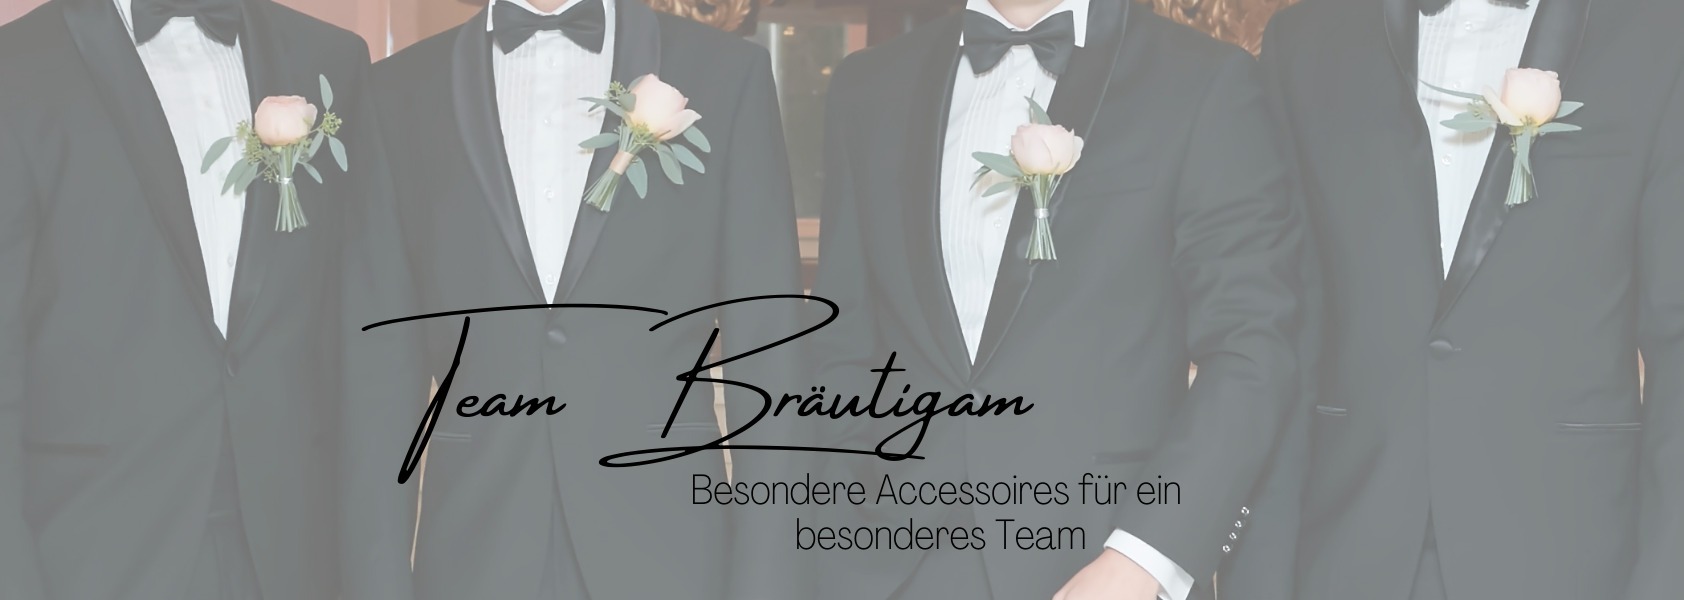 Hochzeitsshop_JGA Accessoires für den Bräutigam und Team Bräutigam